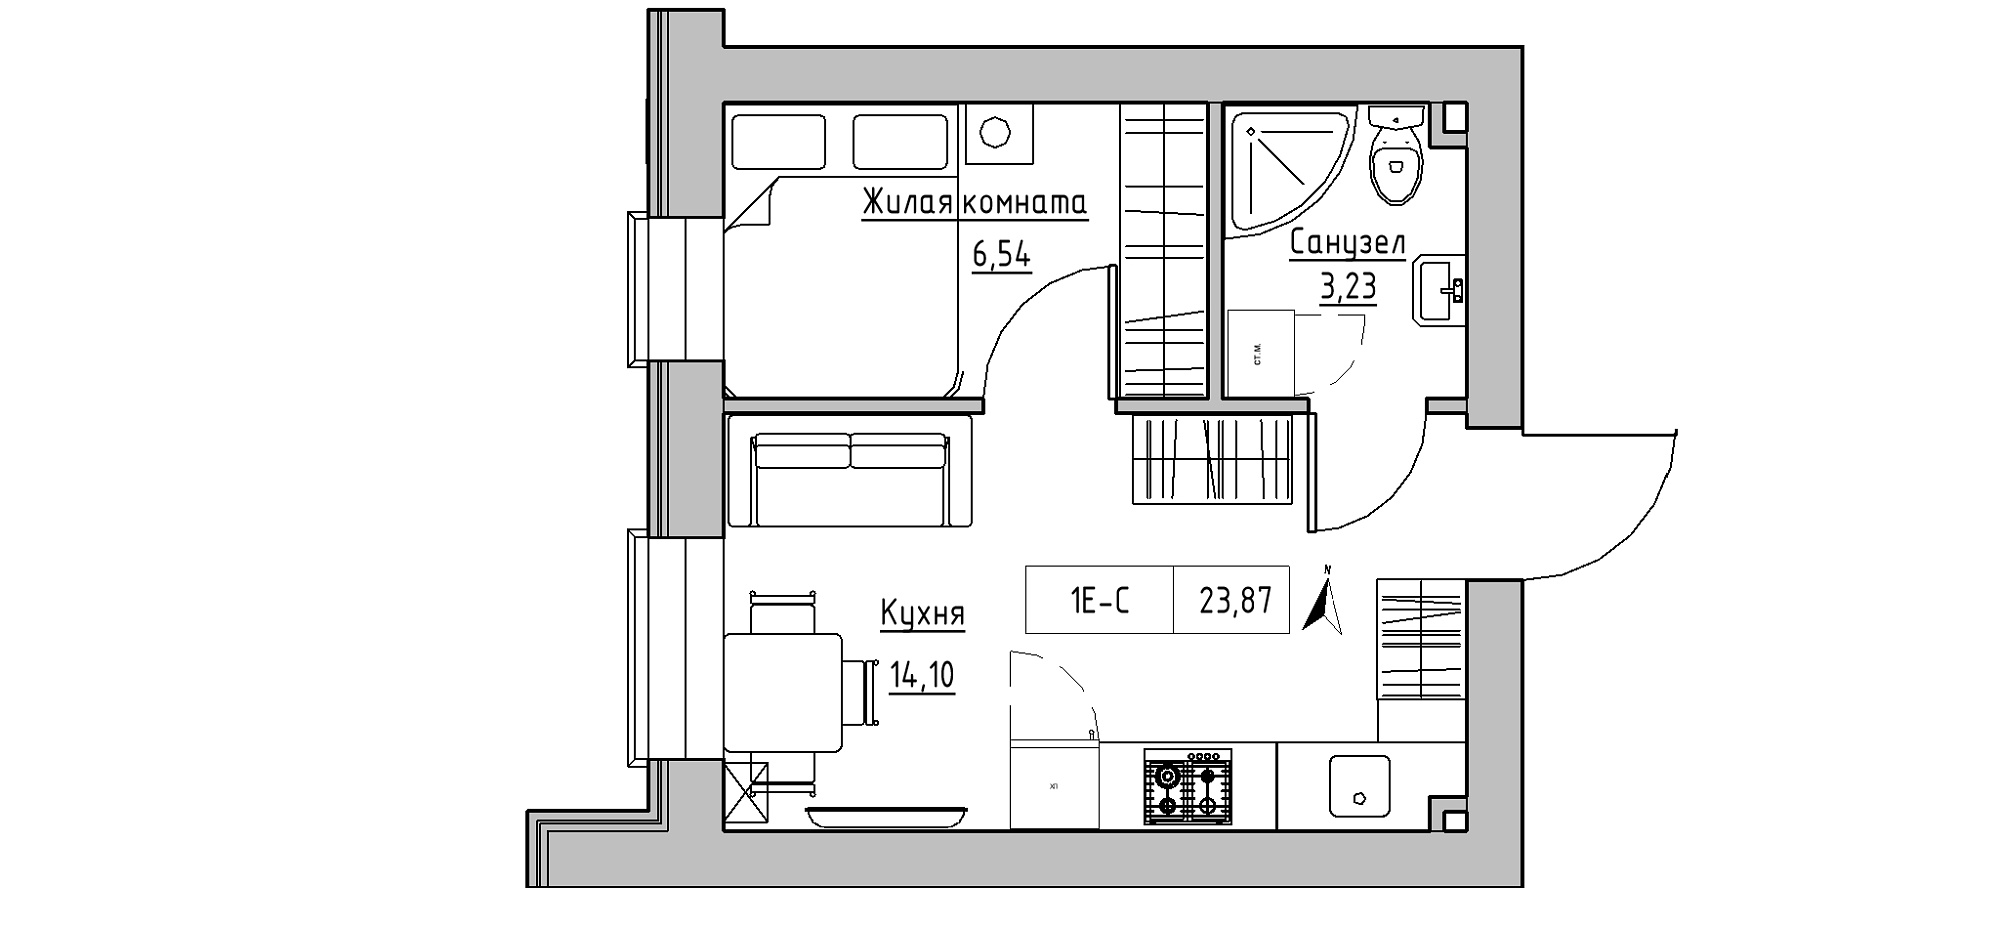 Планировка 1-к квартира площей 23.87м2, KS-020-03/0012.